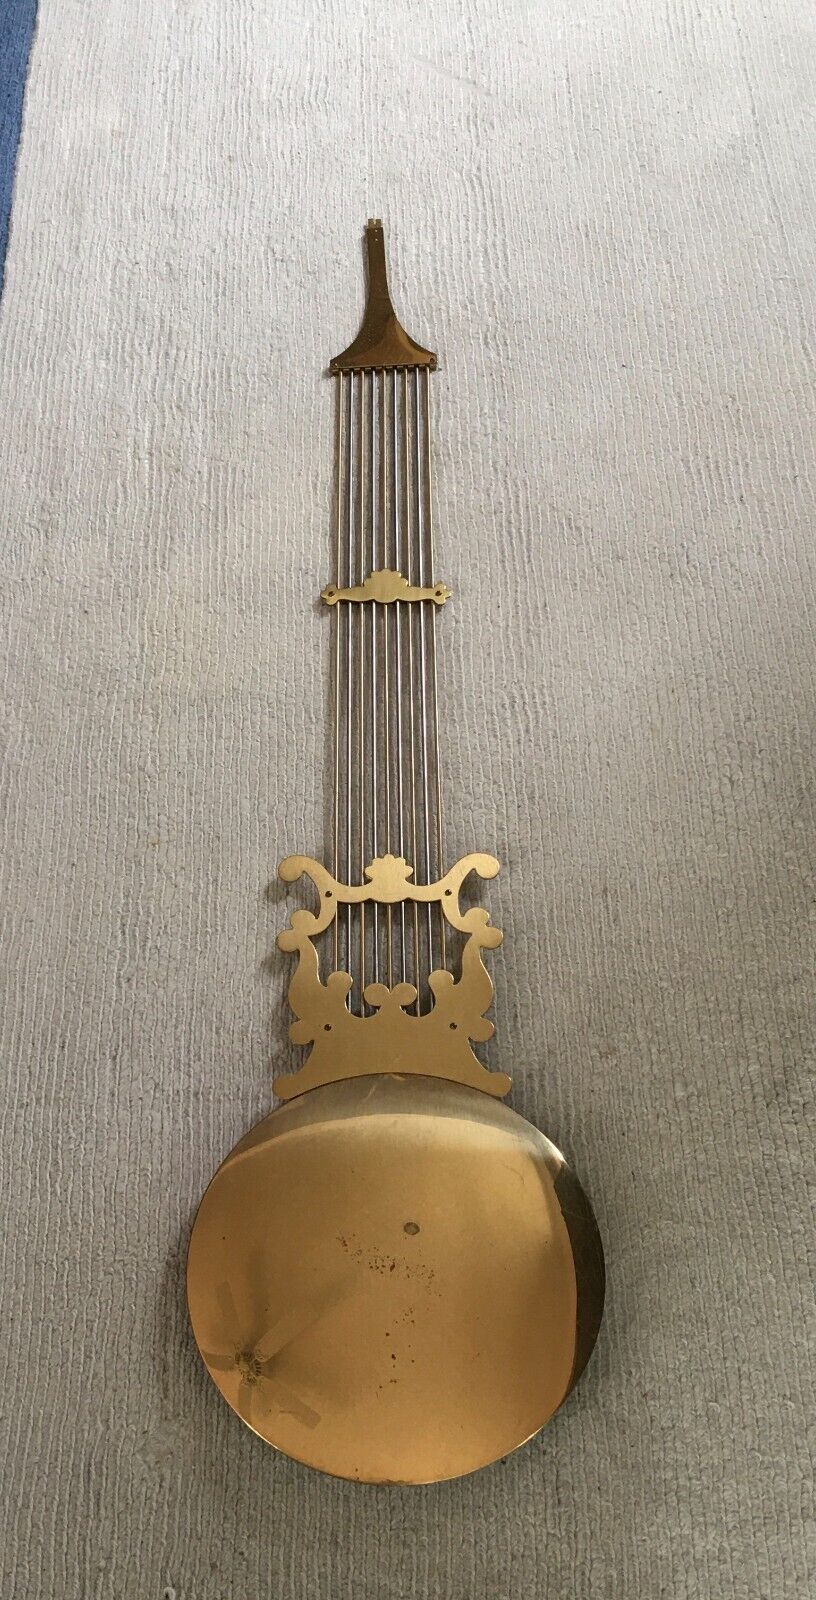 Vintage Metal Gold Hermle / Kieninger Clock Lyre Pendulum Made in Germany 48